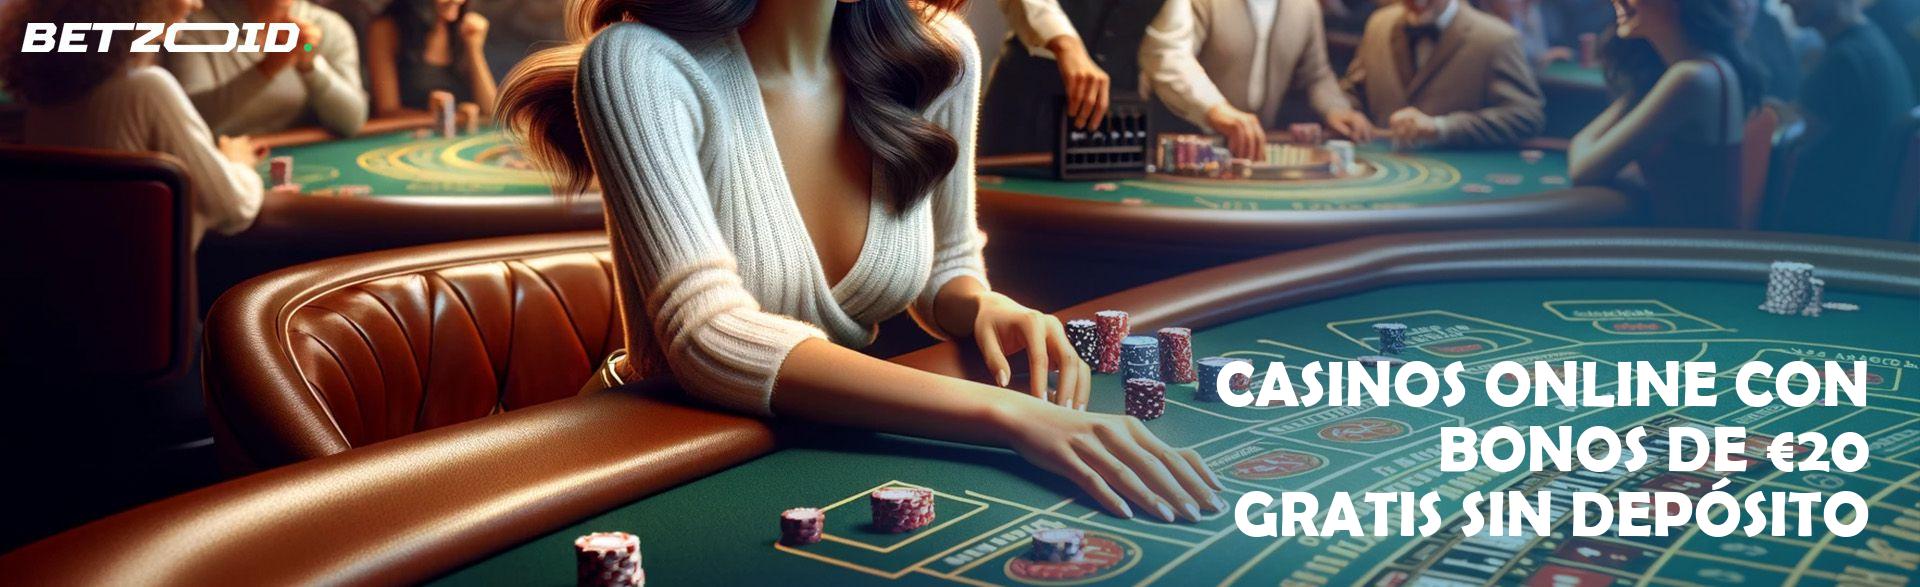 Casinos Online con Bonos De €20 Gratis sin Depósito.